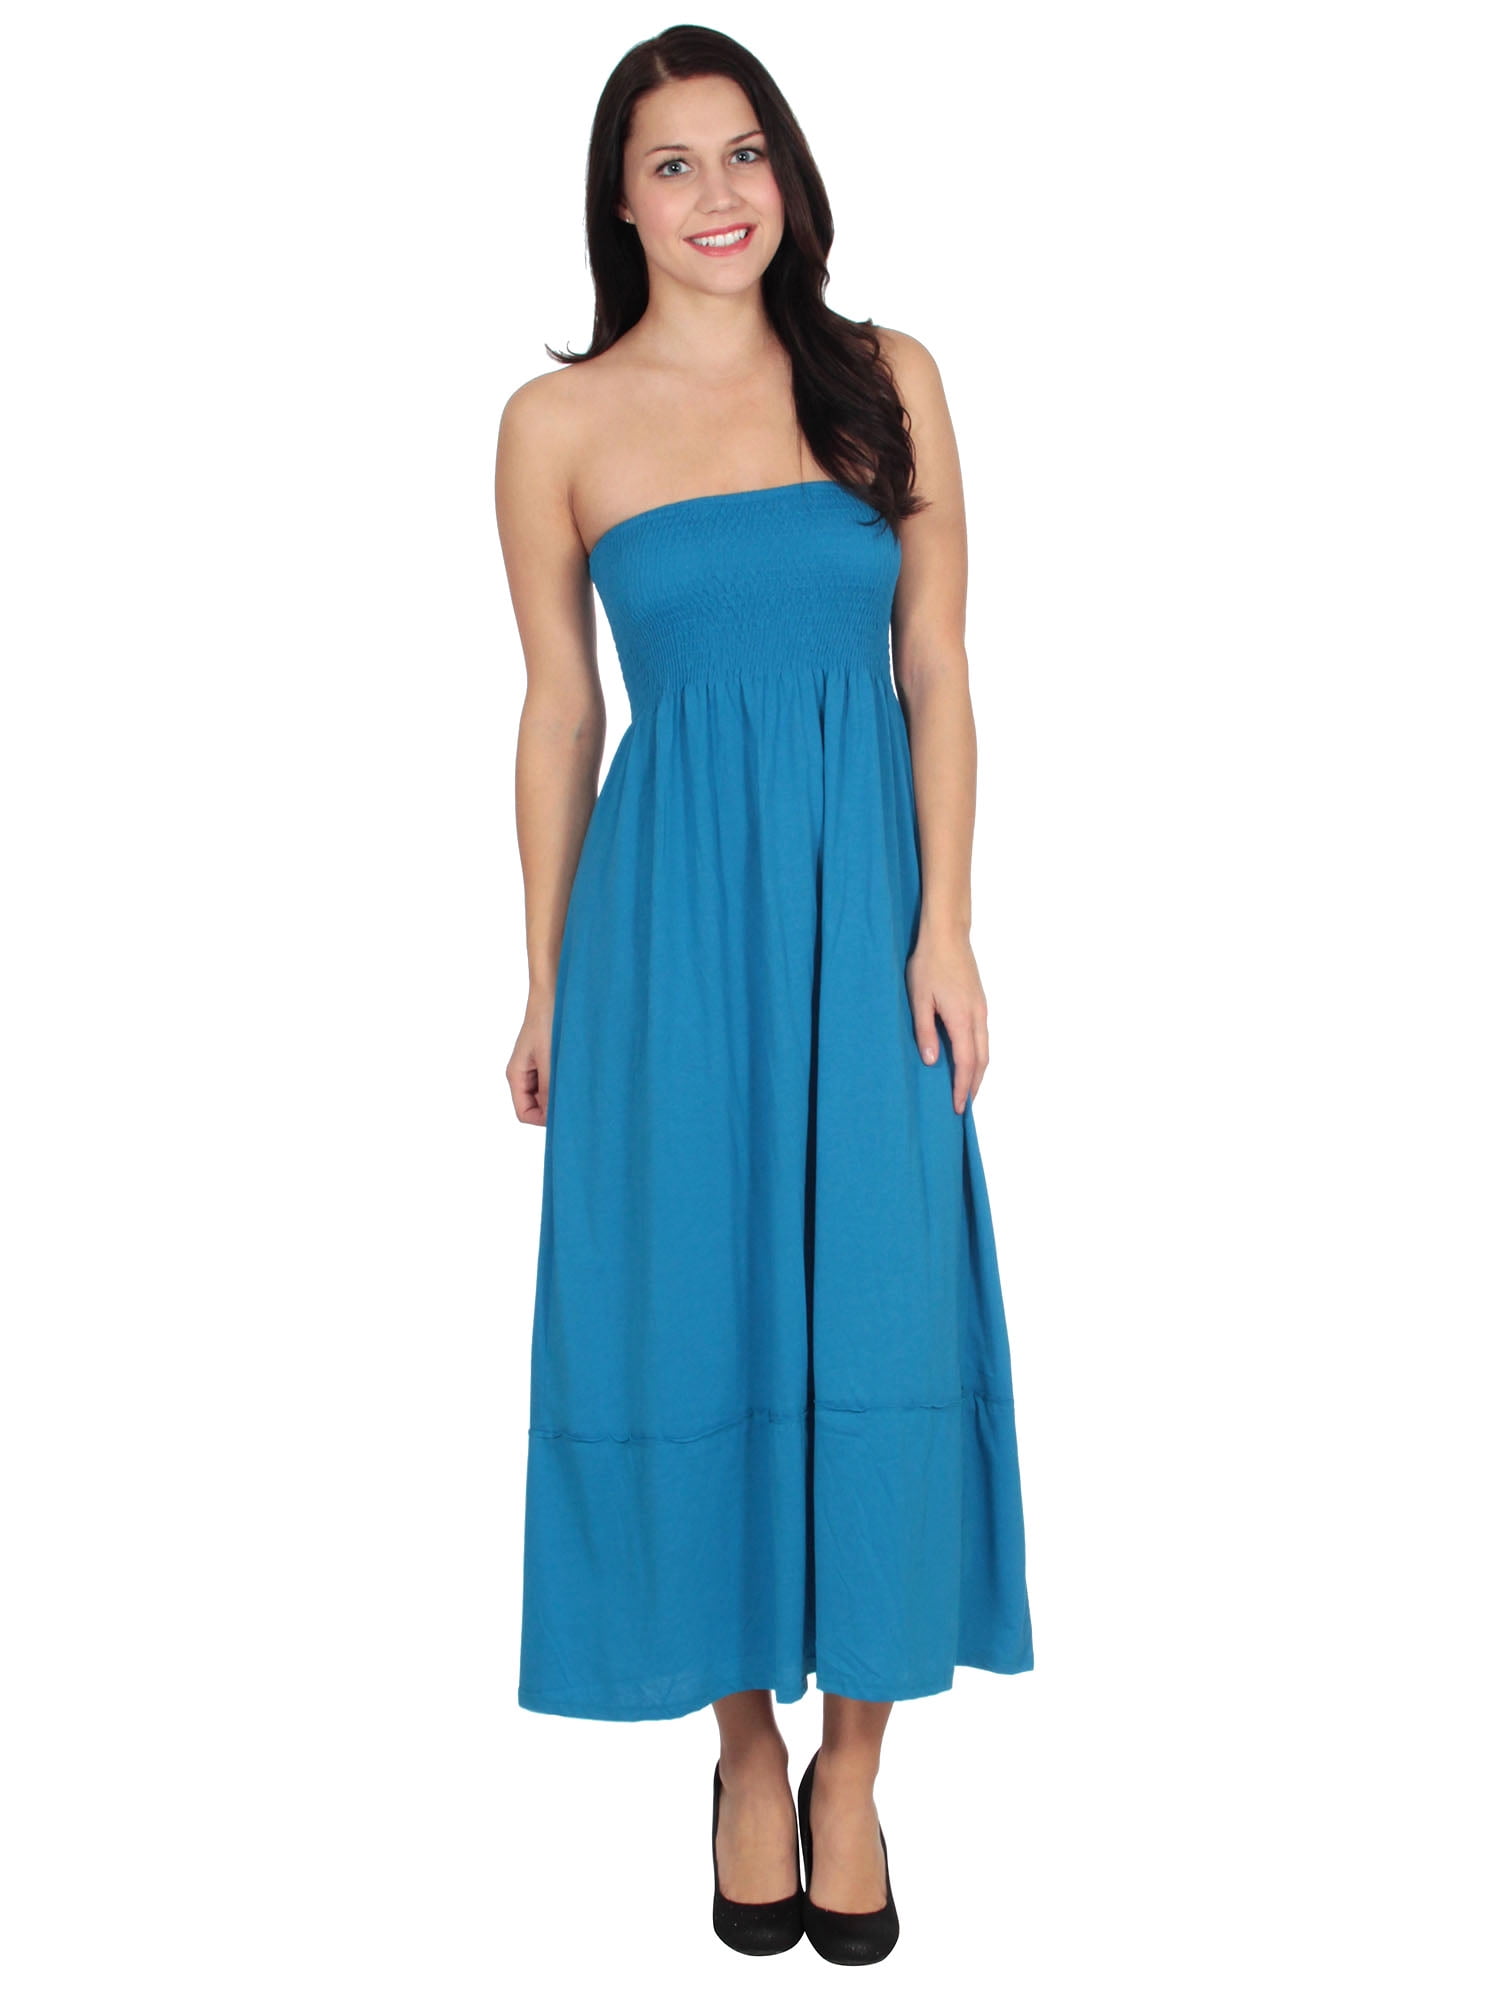 BASILICA - Women's Blue Maxi Summer Long strapless dress - Walmart.com ...